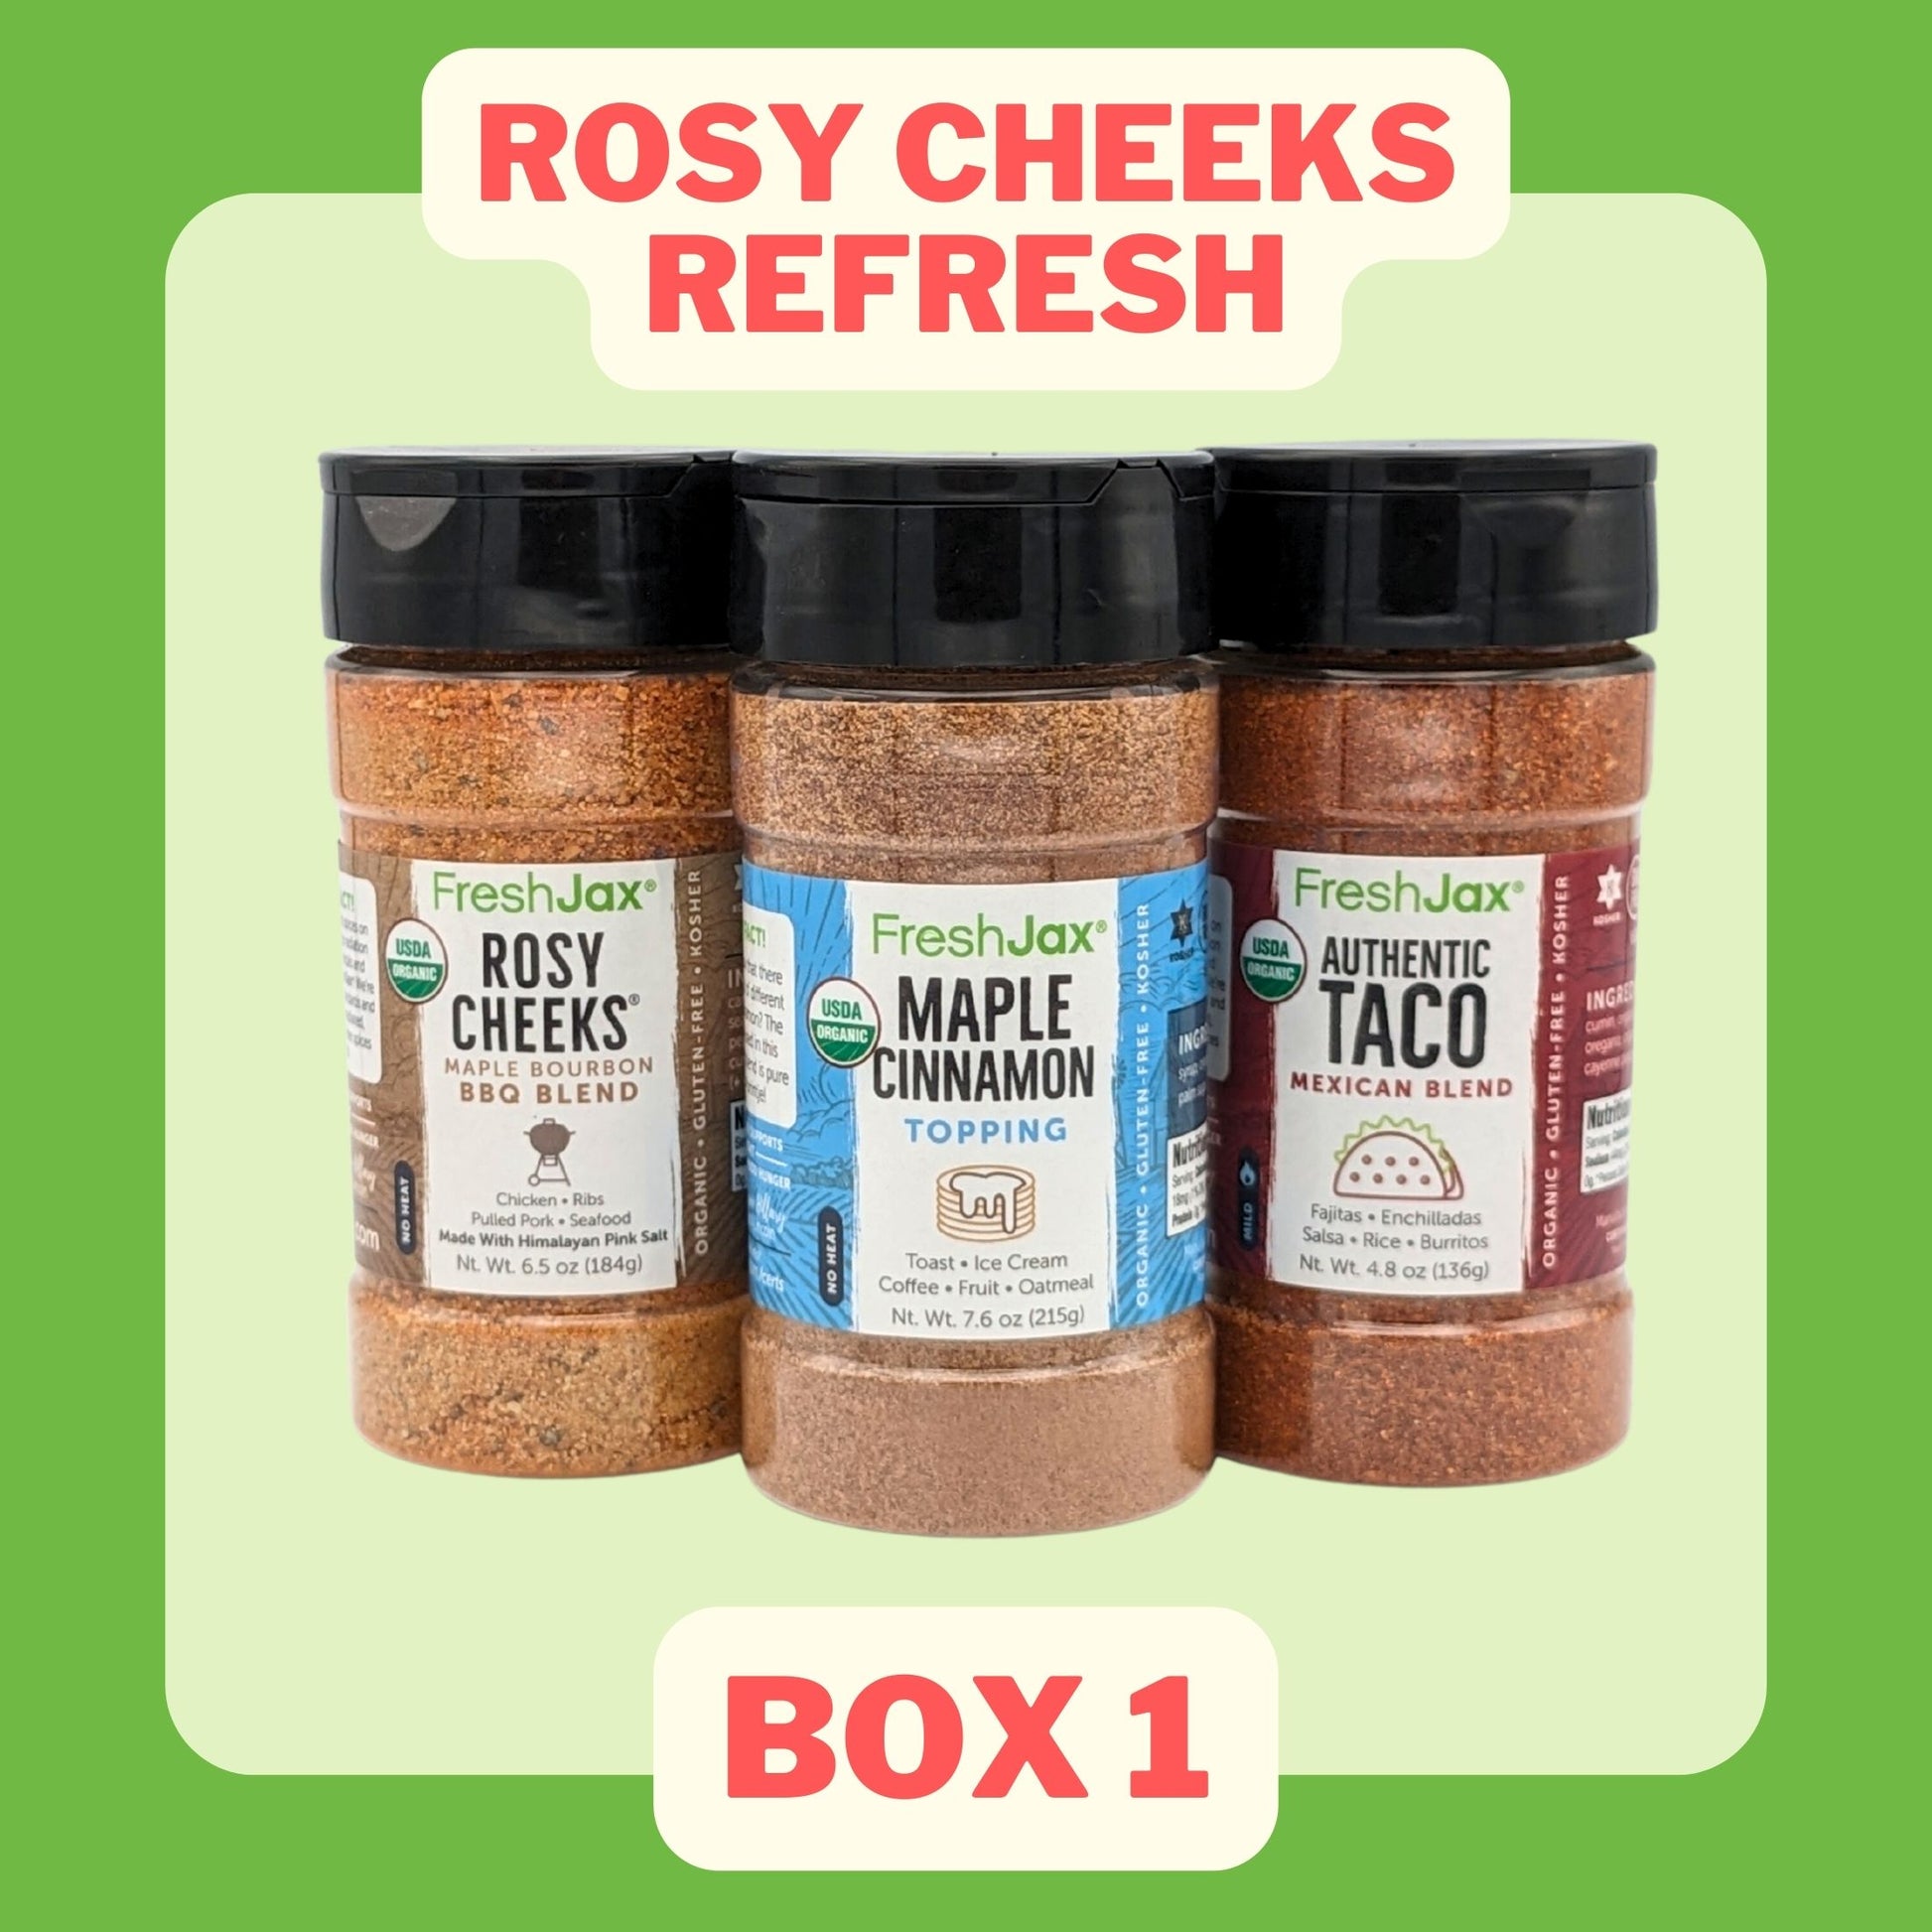 Rosy Cheeks ReFresh Box 1 : Rosy Cheeks, Maple Cinnamon, Taco Seasoning